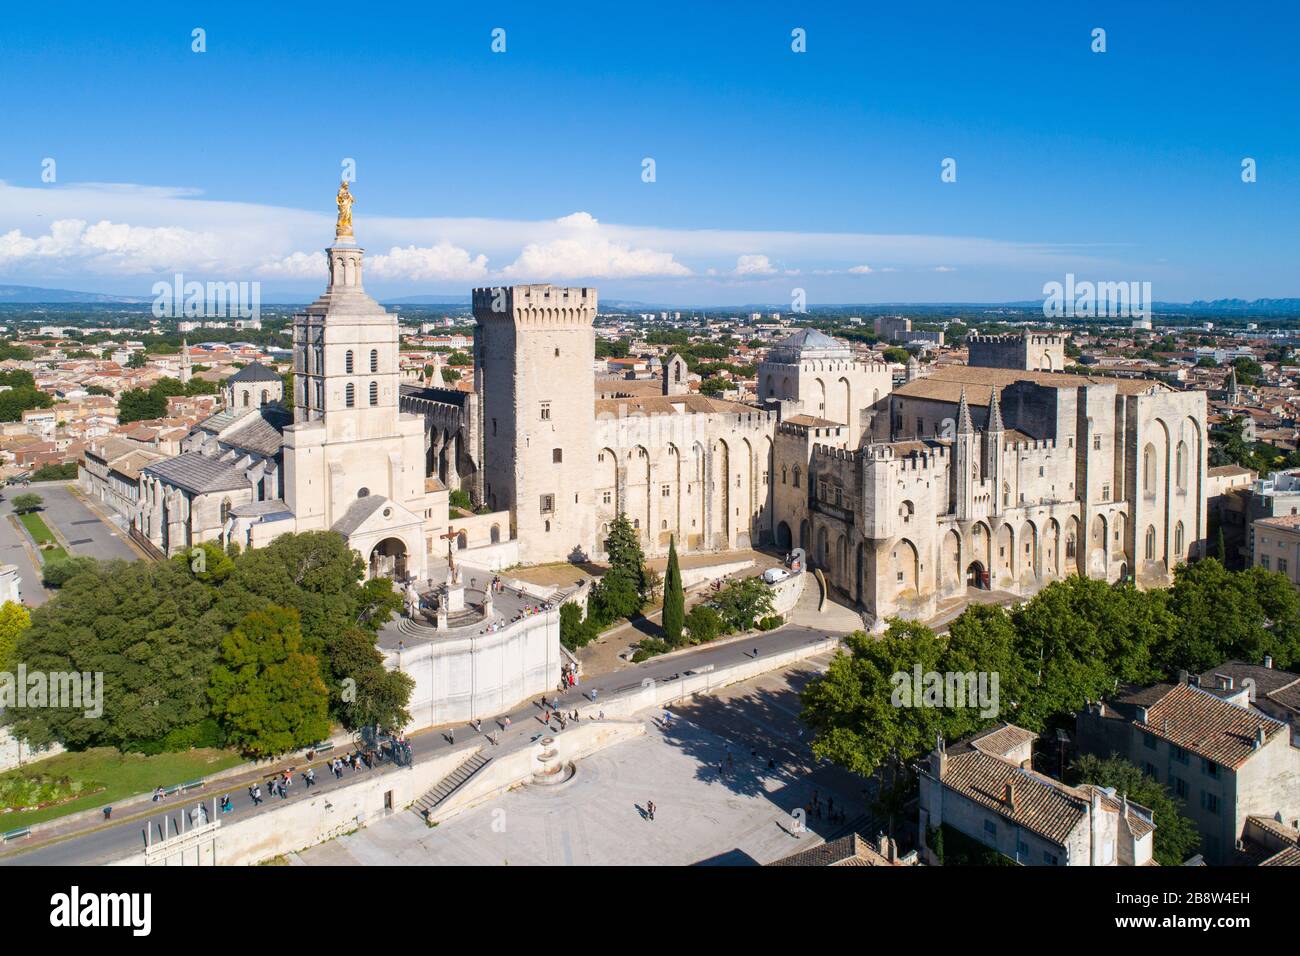 Luftbild des Palastes von Päpsten, Avignon, das von der UNESCO zum Weltkulturerbe ernannt wurde Stockfoto